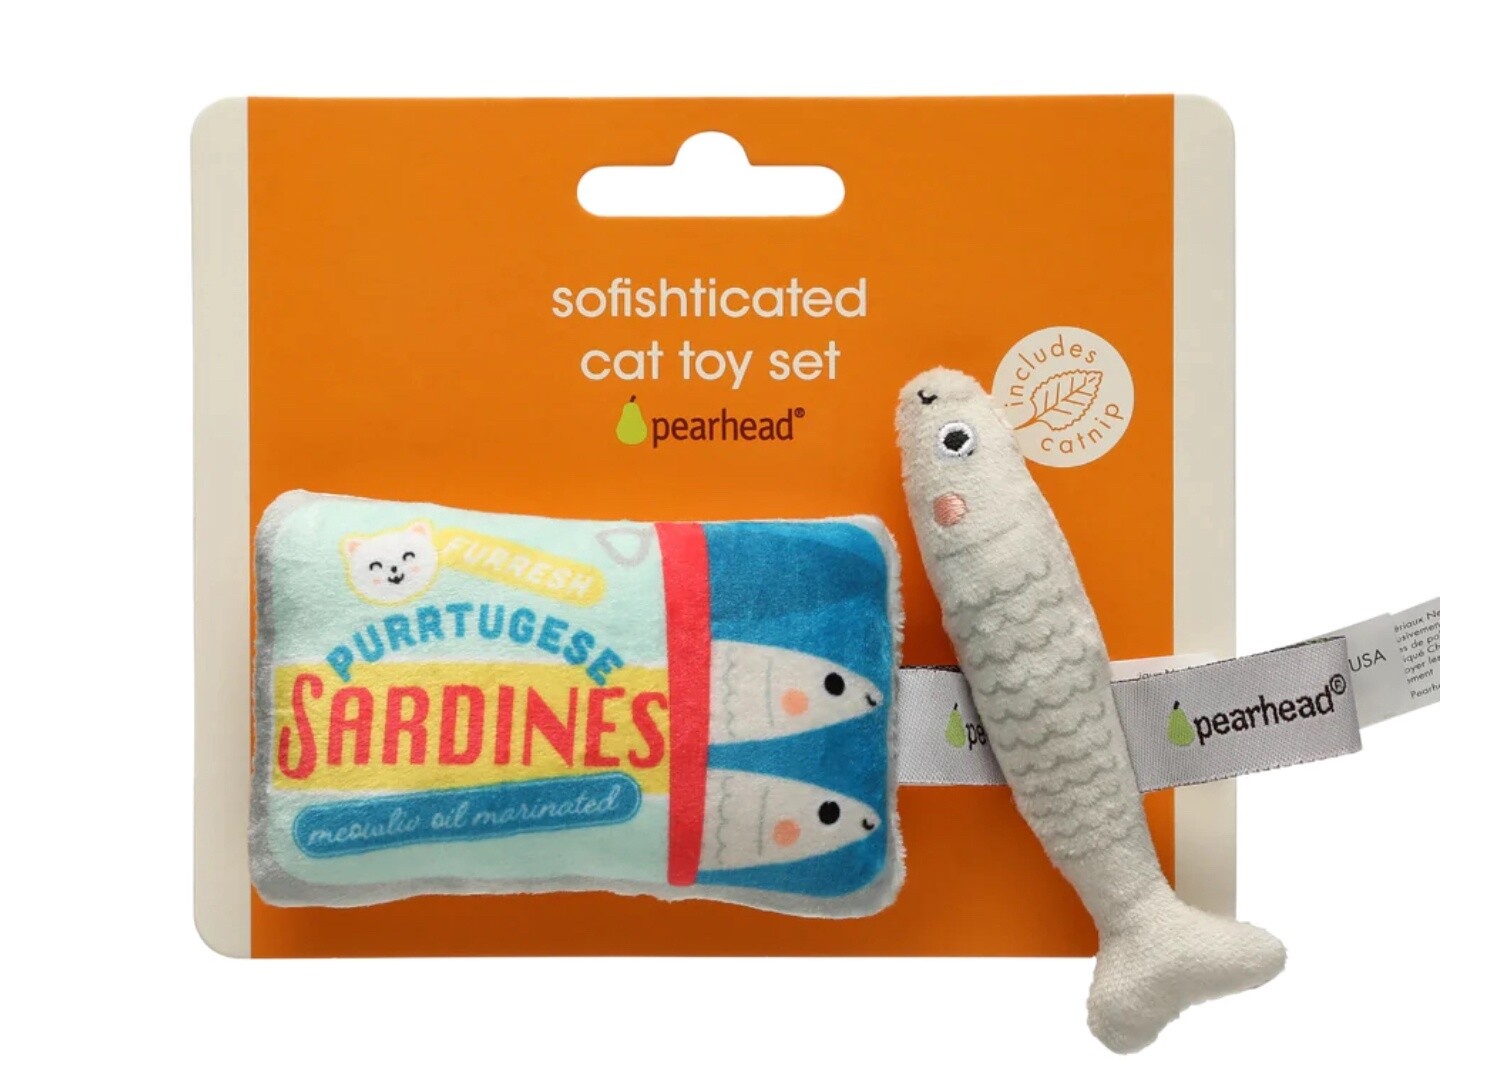 Sofishticated Cat Toy Set